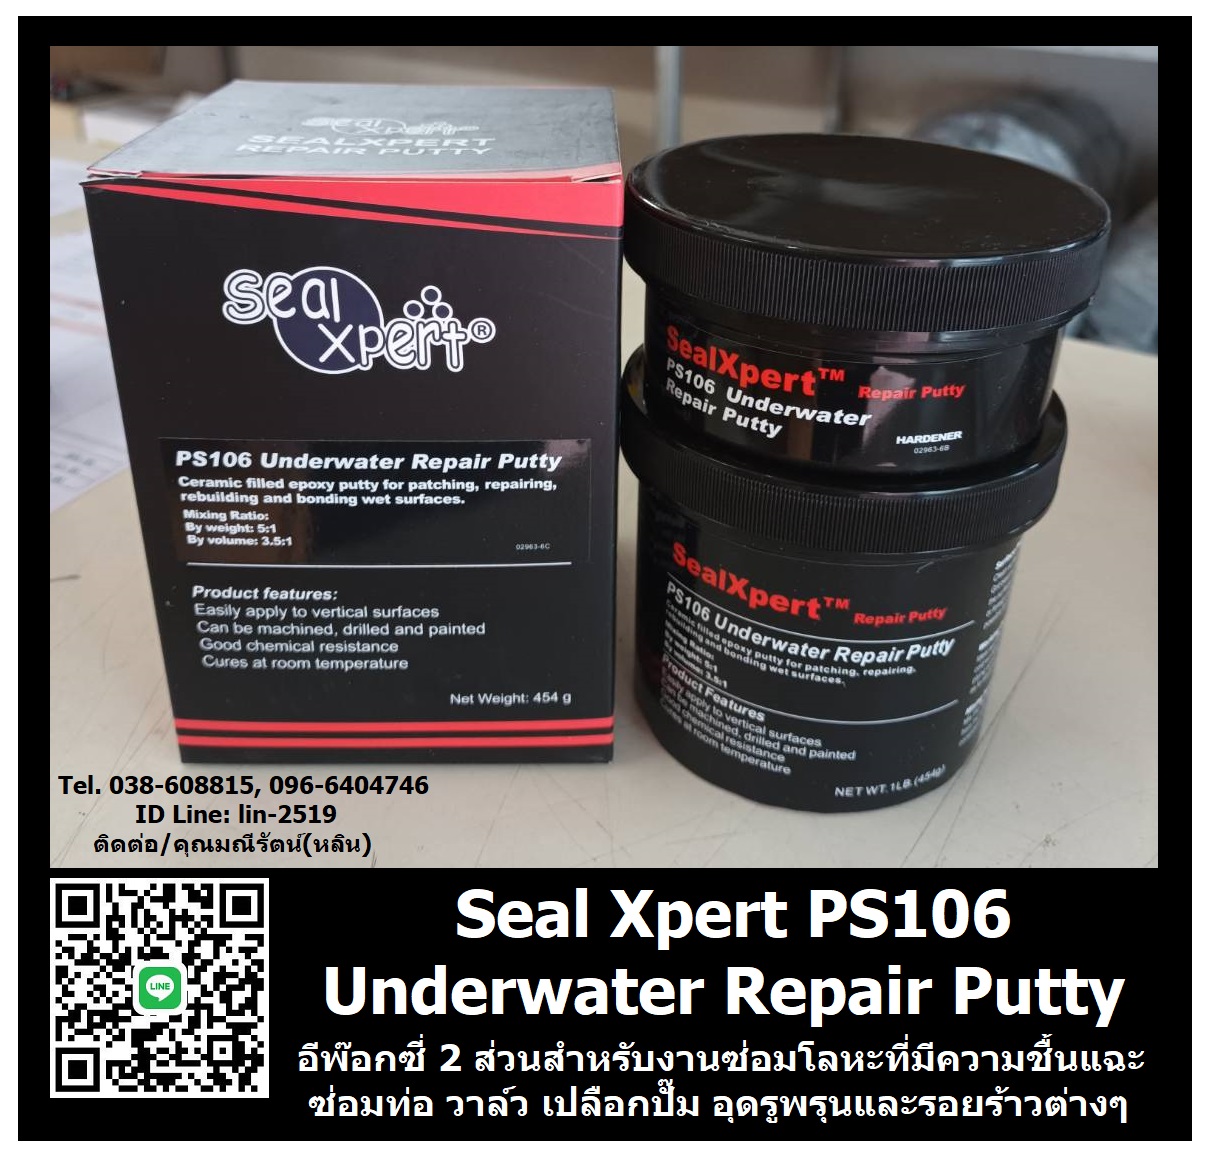 รูปภาพ Seal Xpert PS106 Under Water Repair Putty อีพ๊อกซี่ 2 ส่วน ใช้สำหรับซ่อมท่อ วาล์ว เปลือกปั๊ม ตัวถัง และคอนกรีตในกรณีฉุกเฉิน